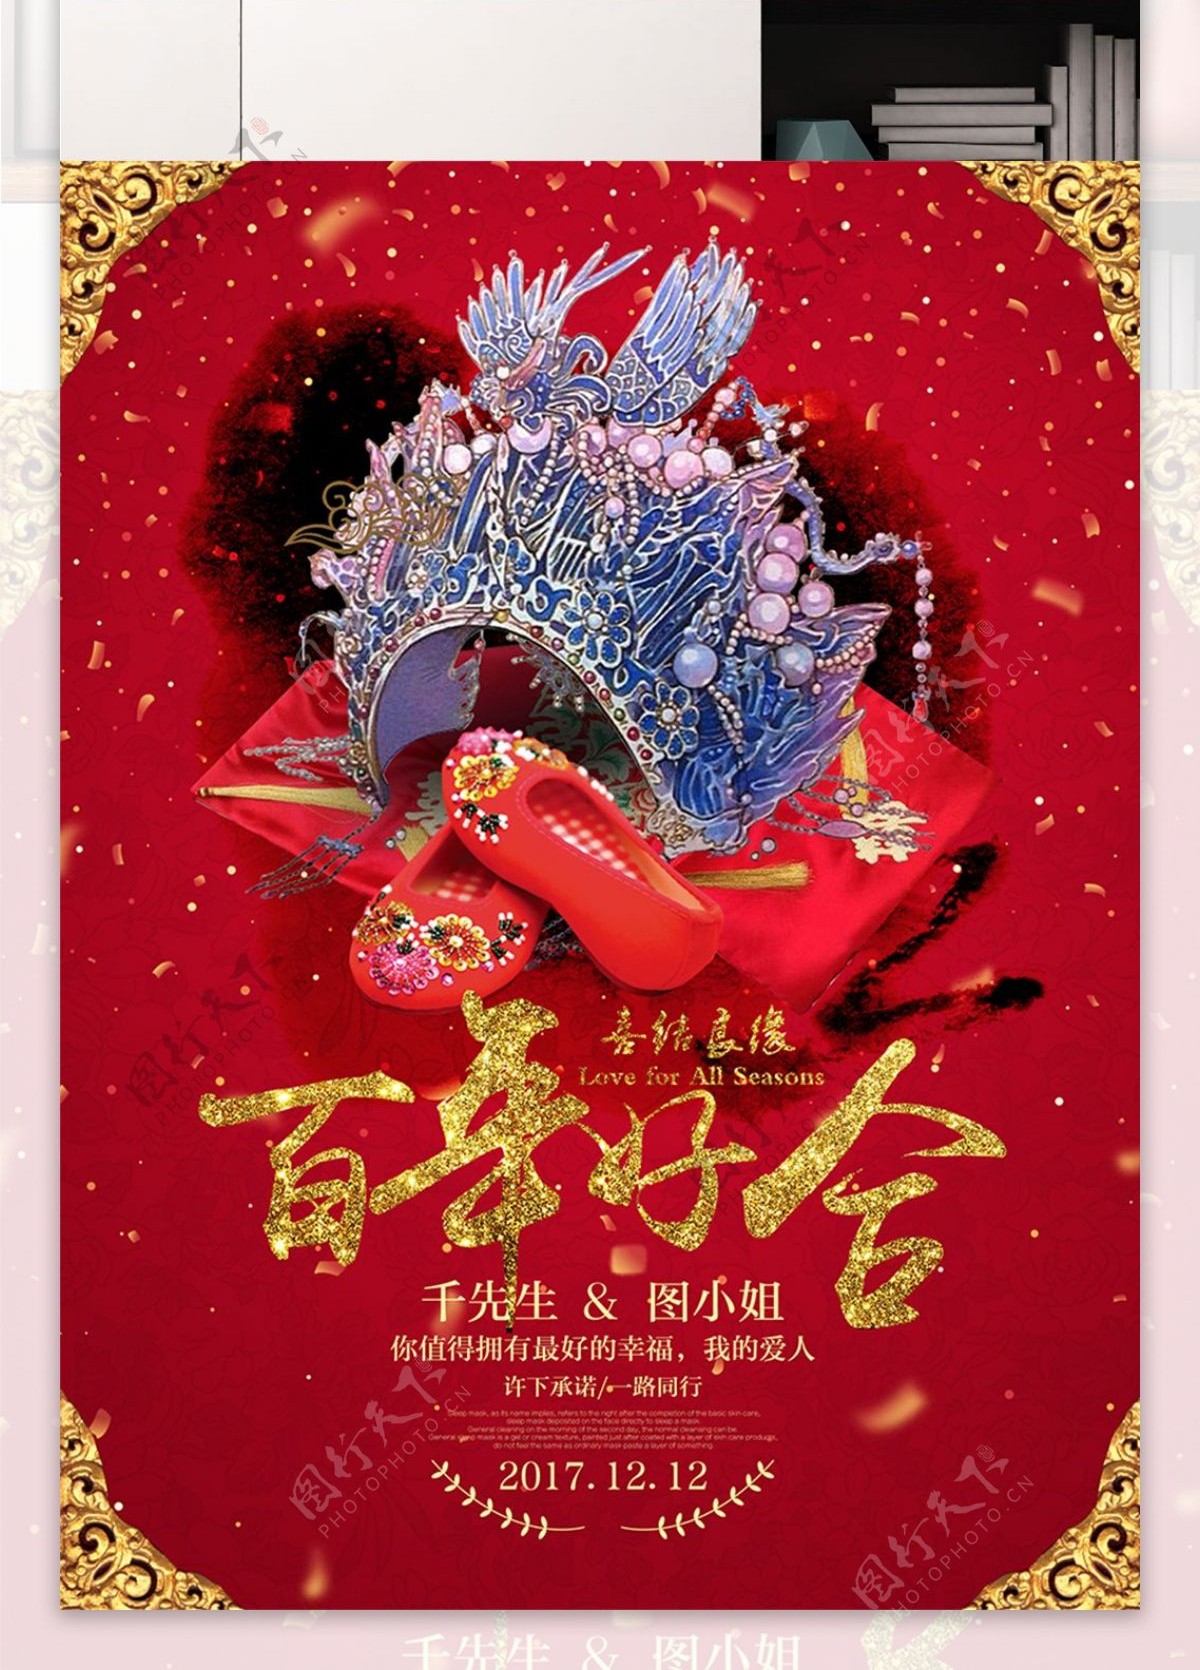 中国红喜庆结婚婚礼百年好合宣传海报